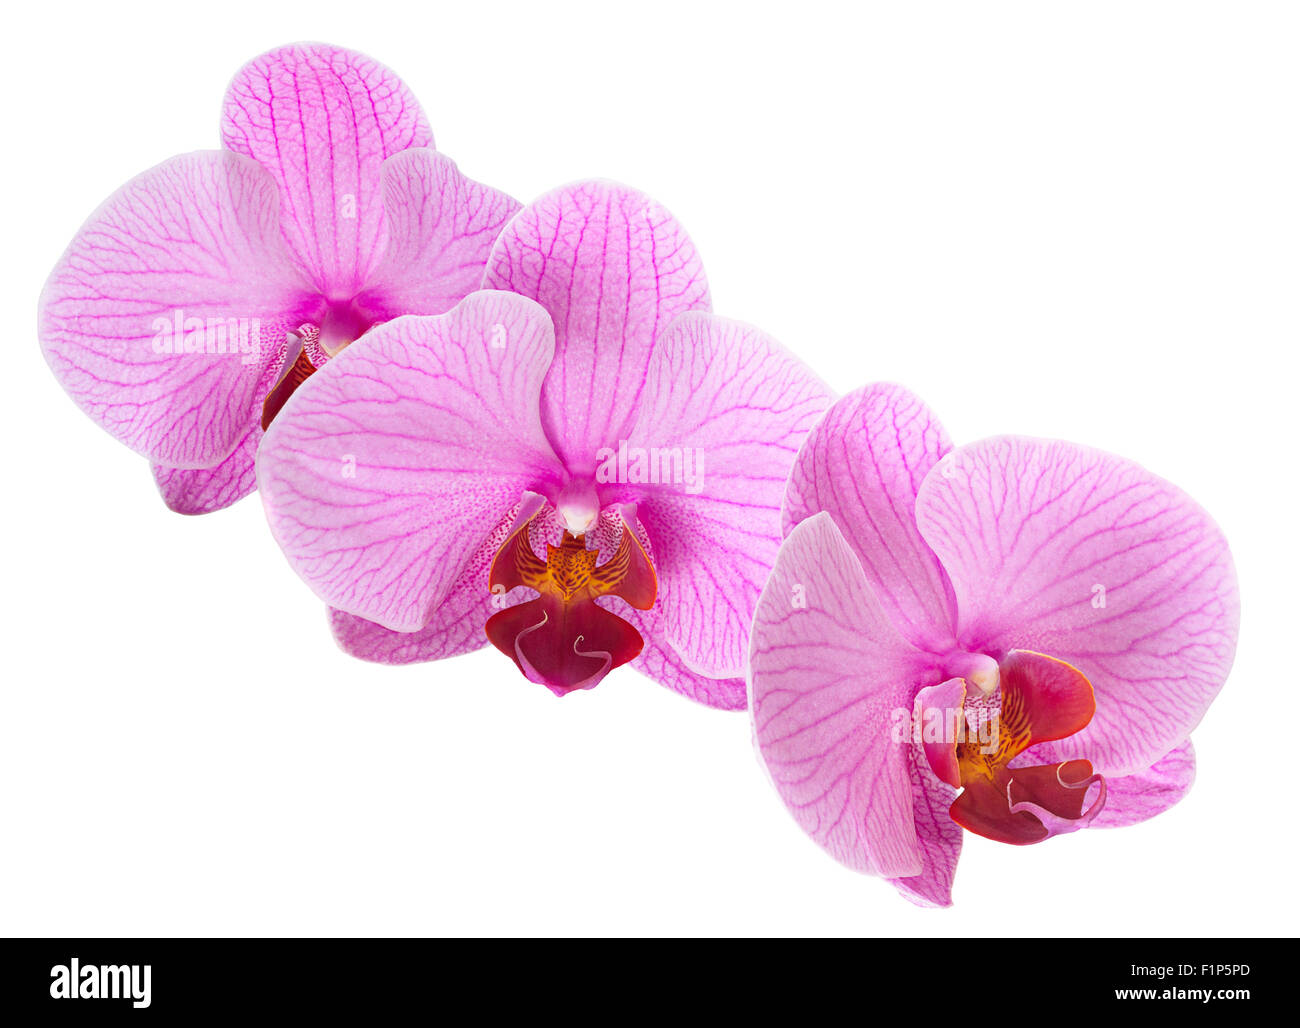 Rosa orquídea closeup aislado en blanco Foto de stock